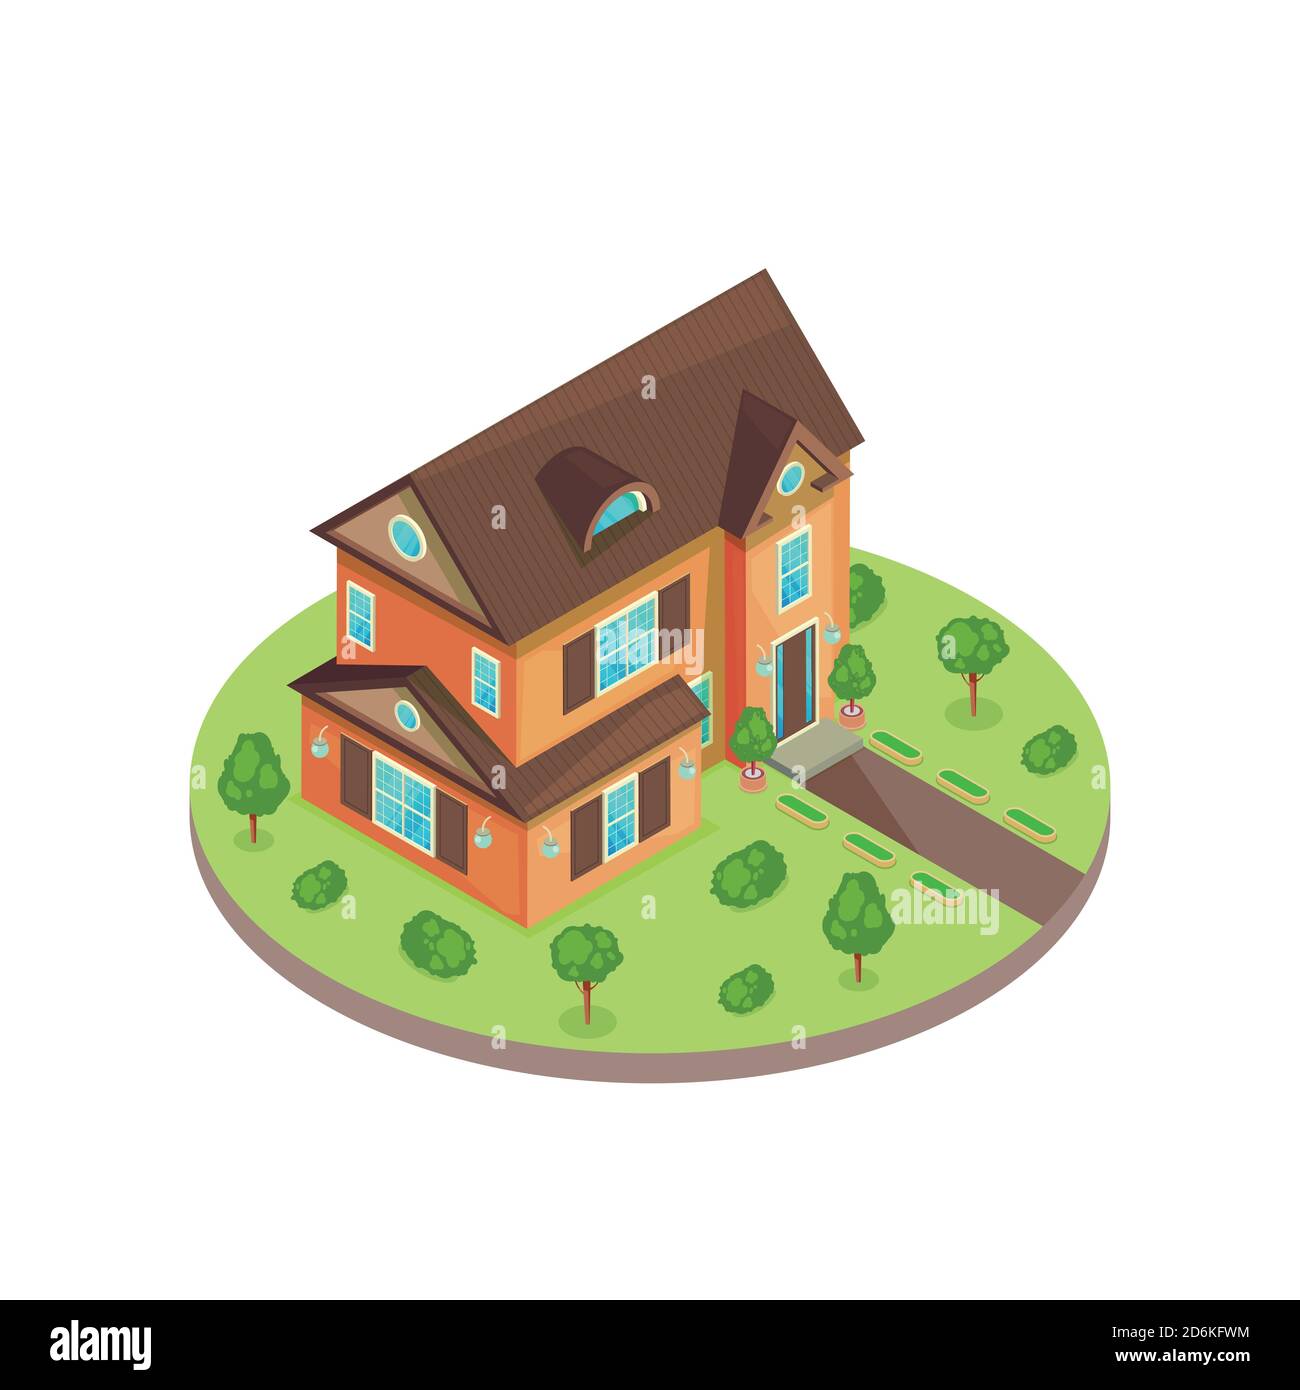 Maison résidentielle classique de deux étages de style isométrique en 3d dans un jardin vert. Illustration vectorielle isolée. Icône Immobilier. Illustration de Vecteur